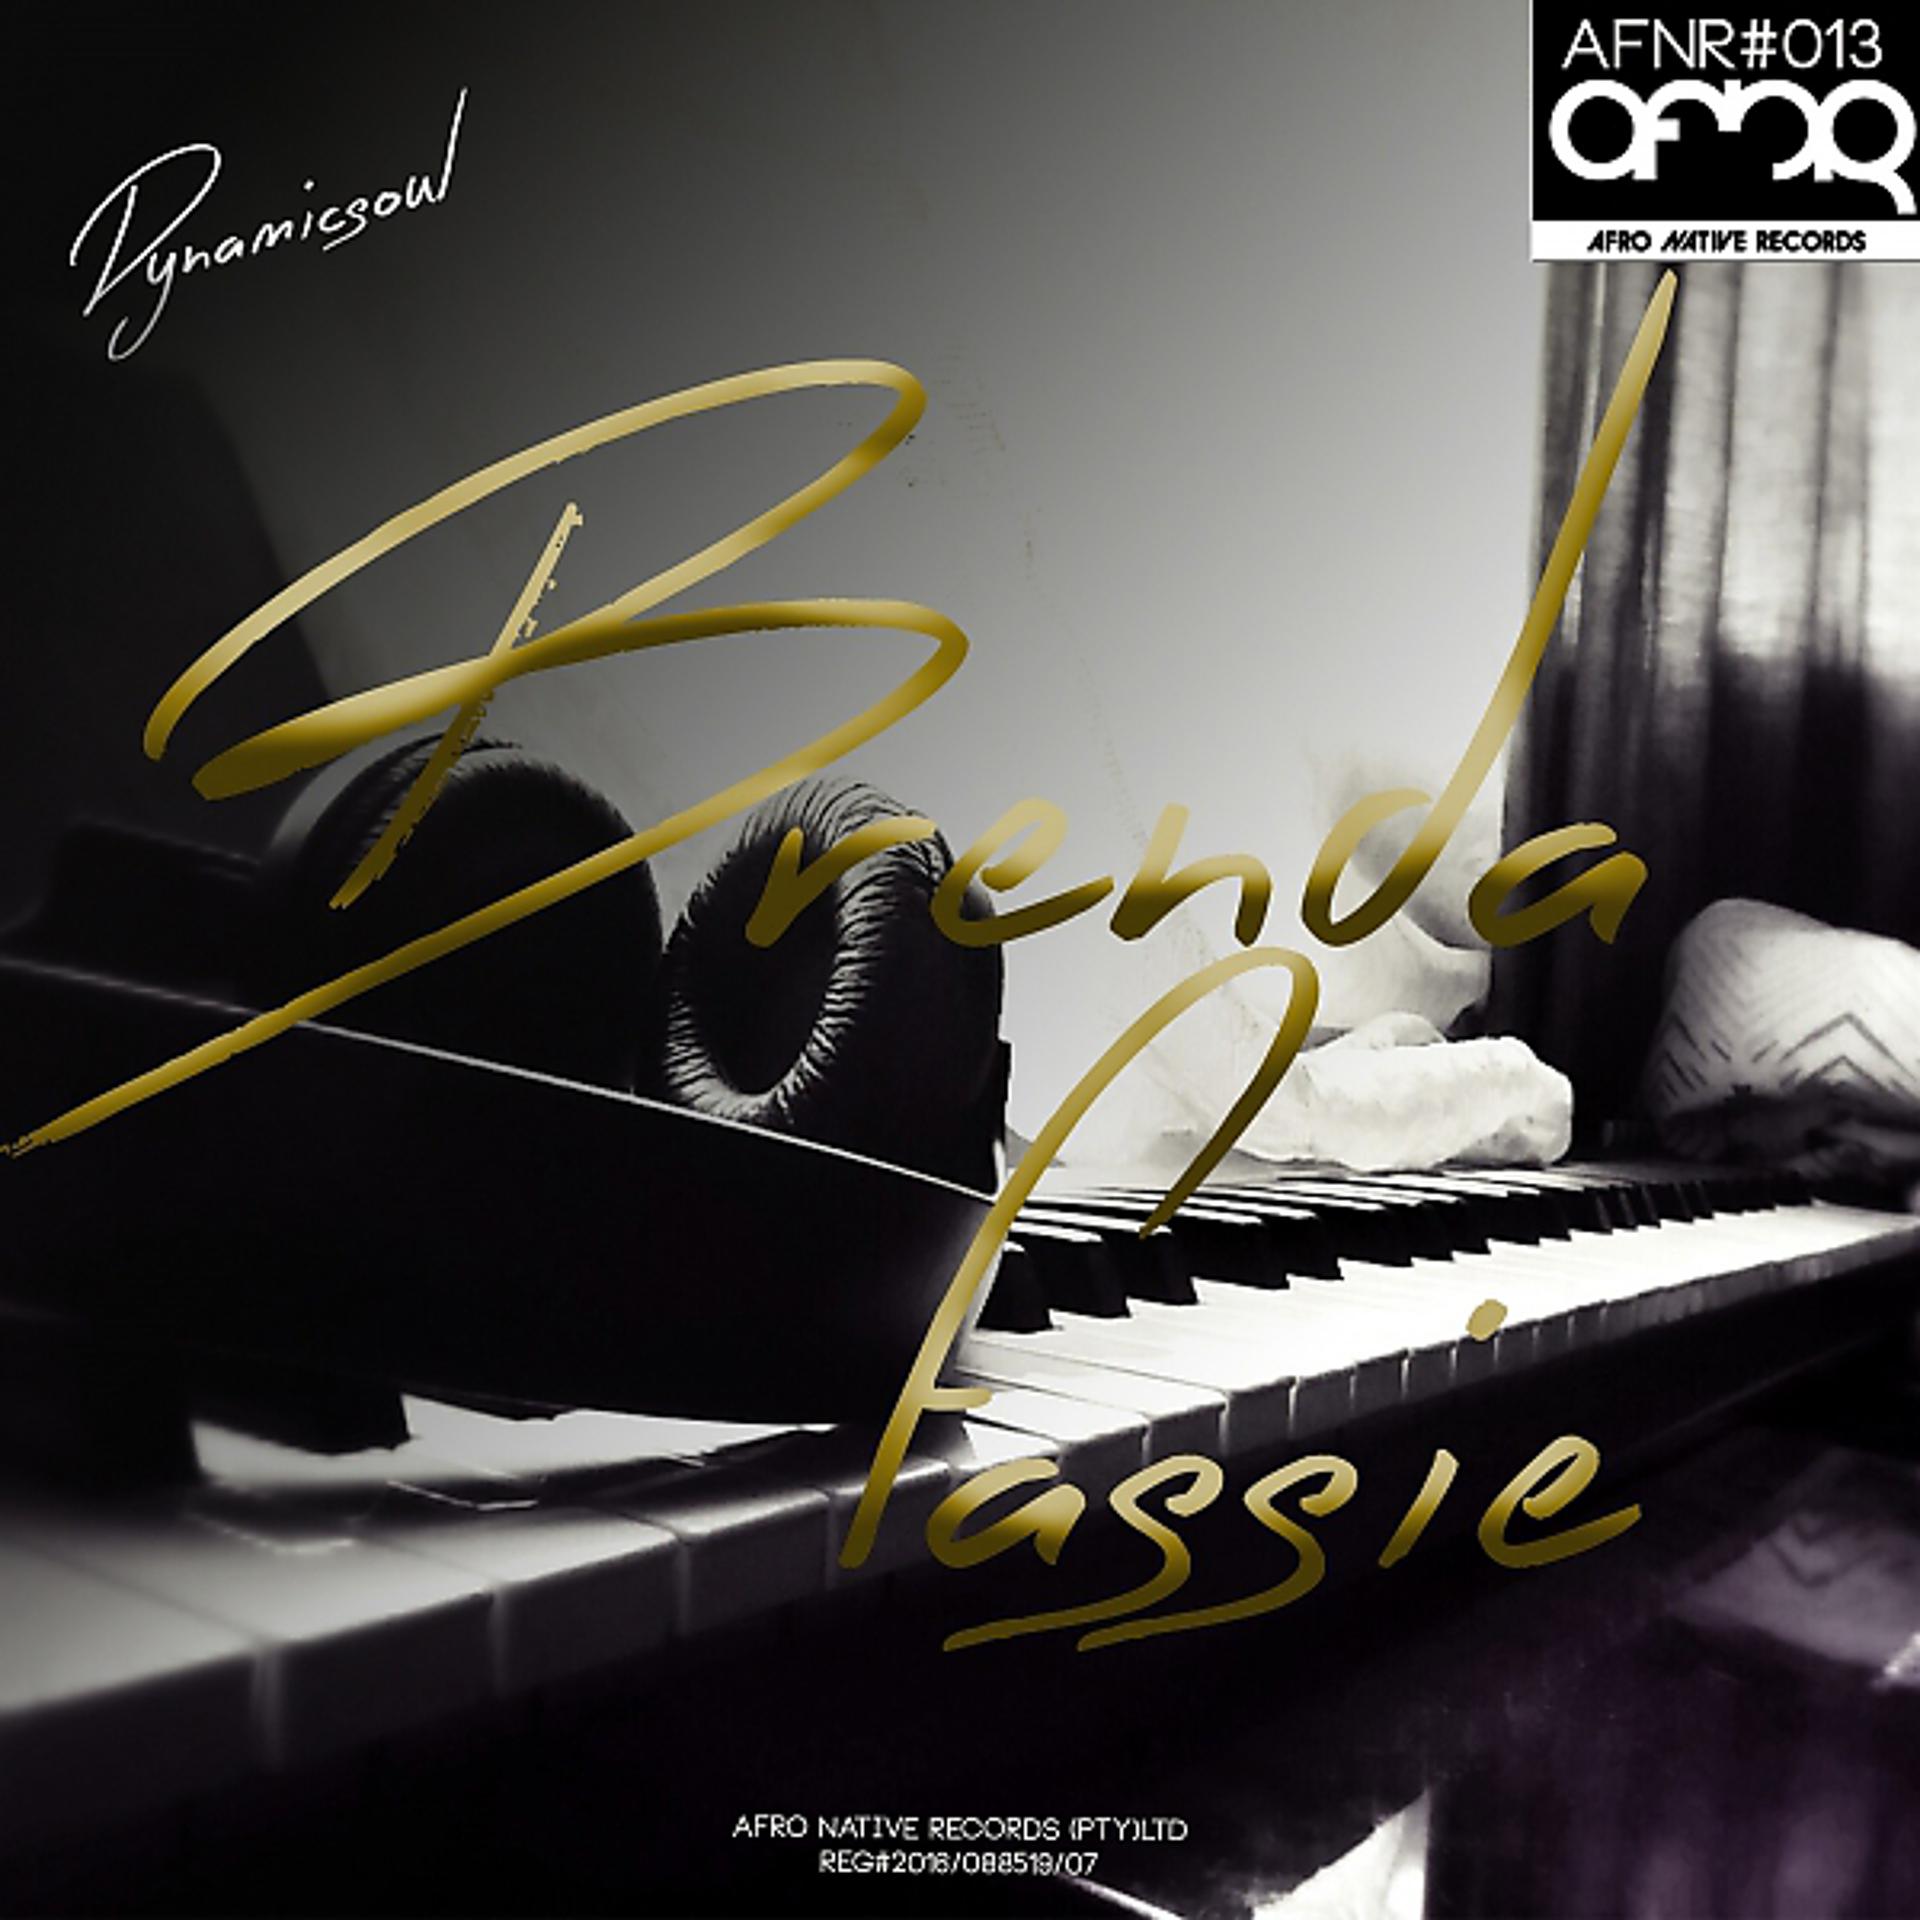 Постер альбома Brenda Fassie